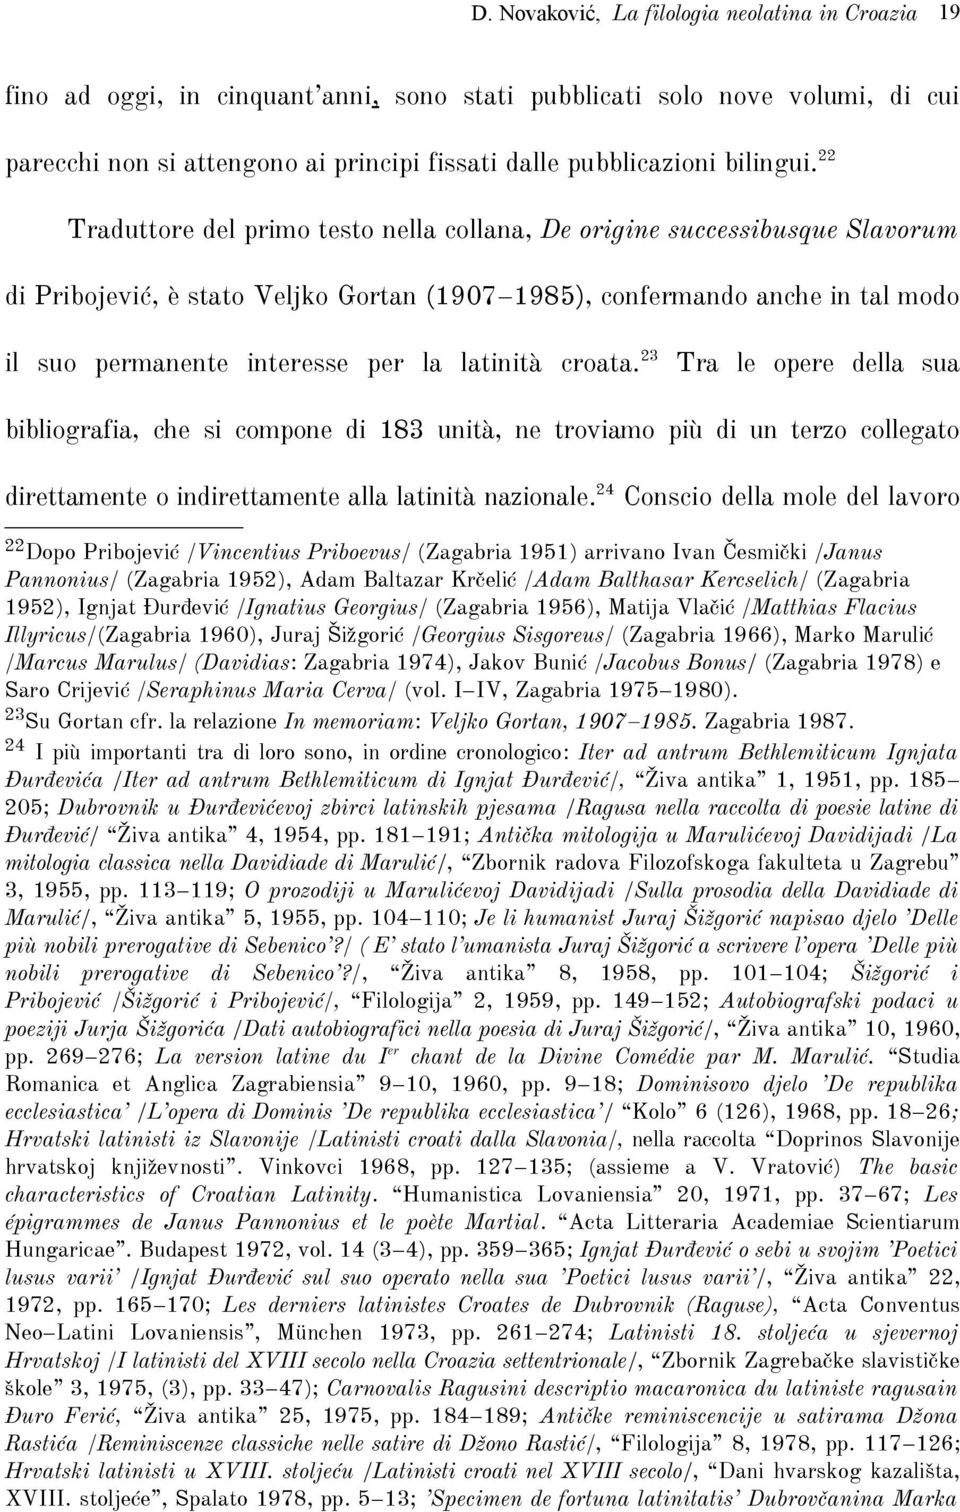 latinità croata. 23 Tra le opere della sua bibliografia, che si compone di 183 unità, ne troviamo più di un terzo collegato direttamente o indirettamente alla latinità nazionale.